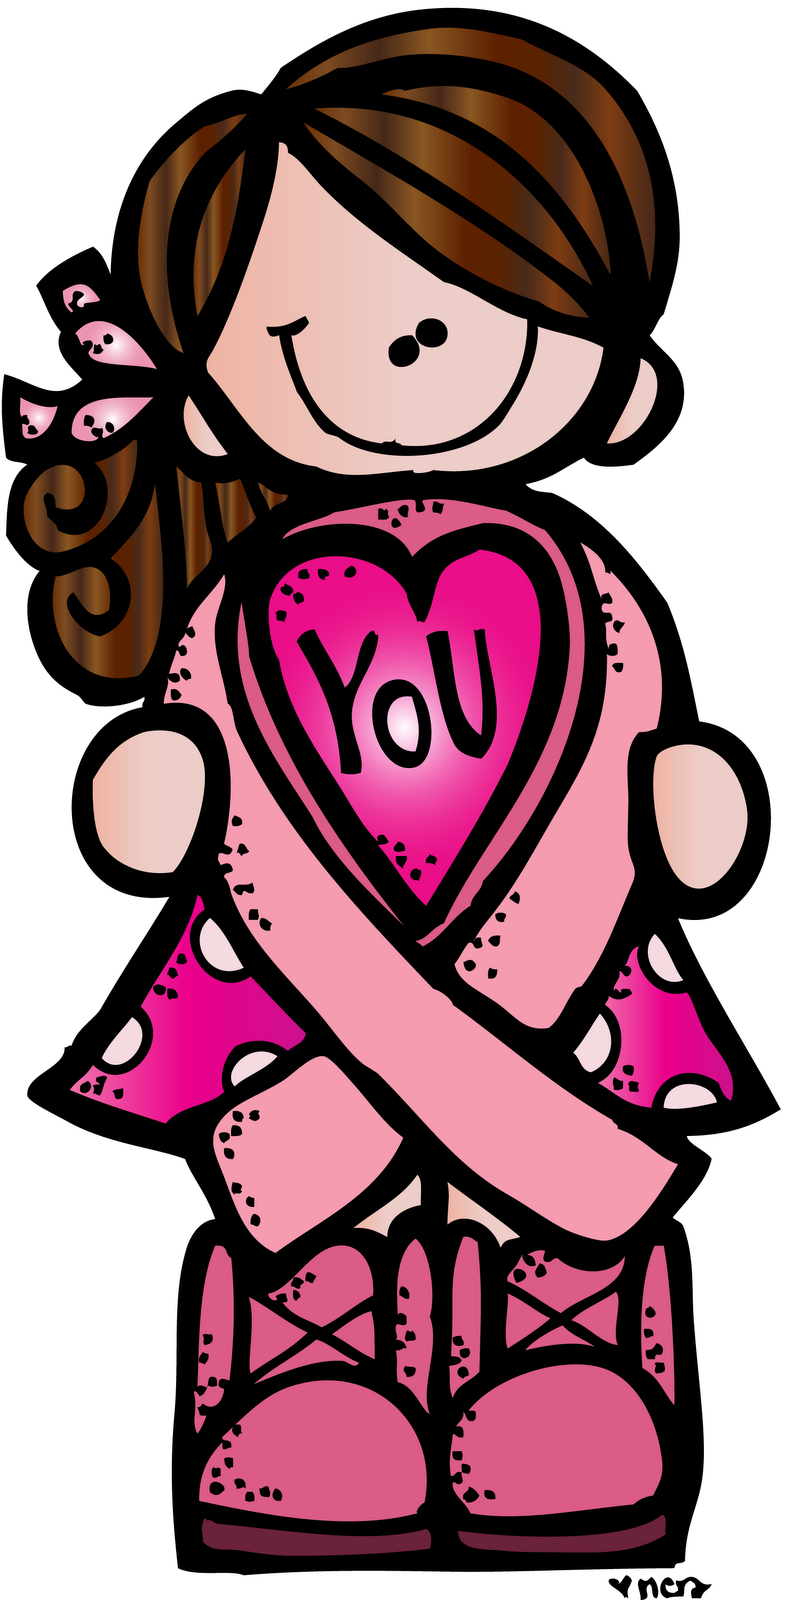 MelonHeadz: Breast Cancer awareness month